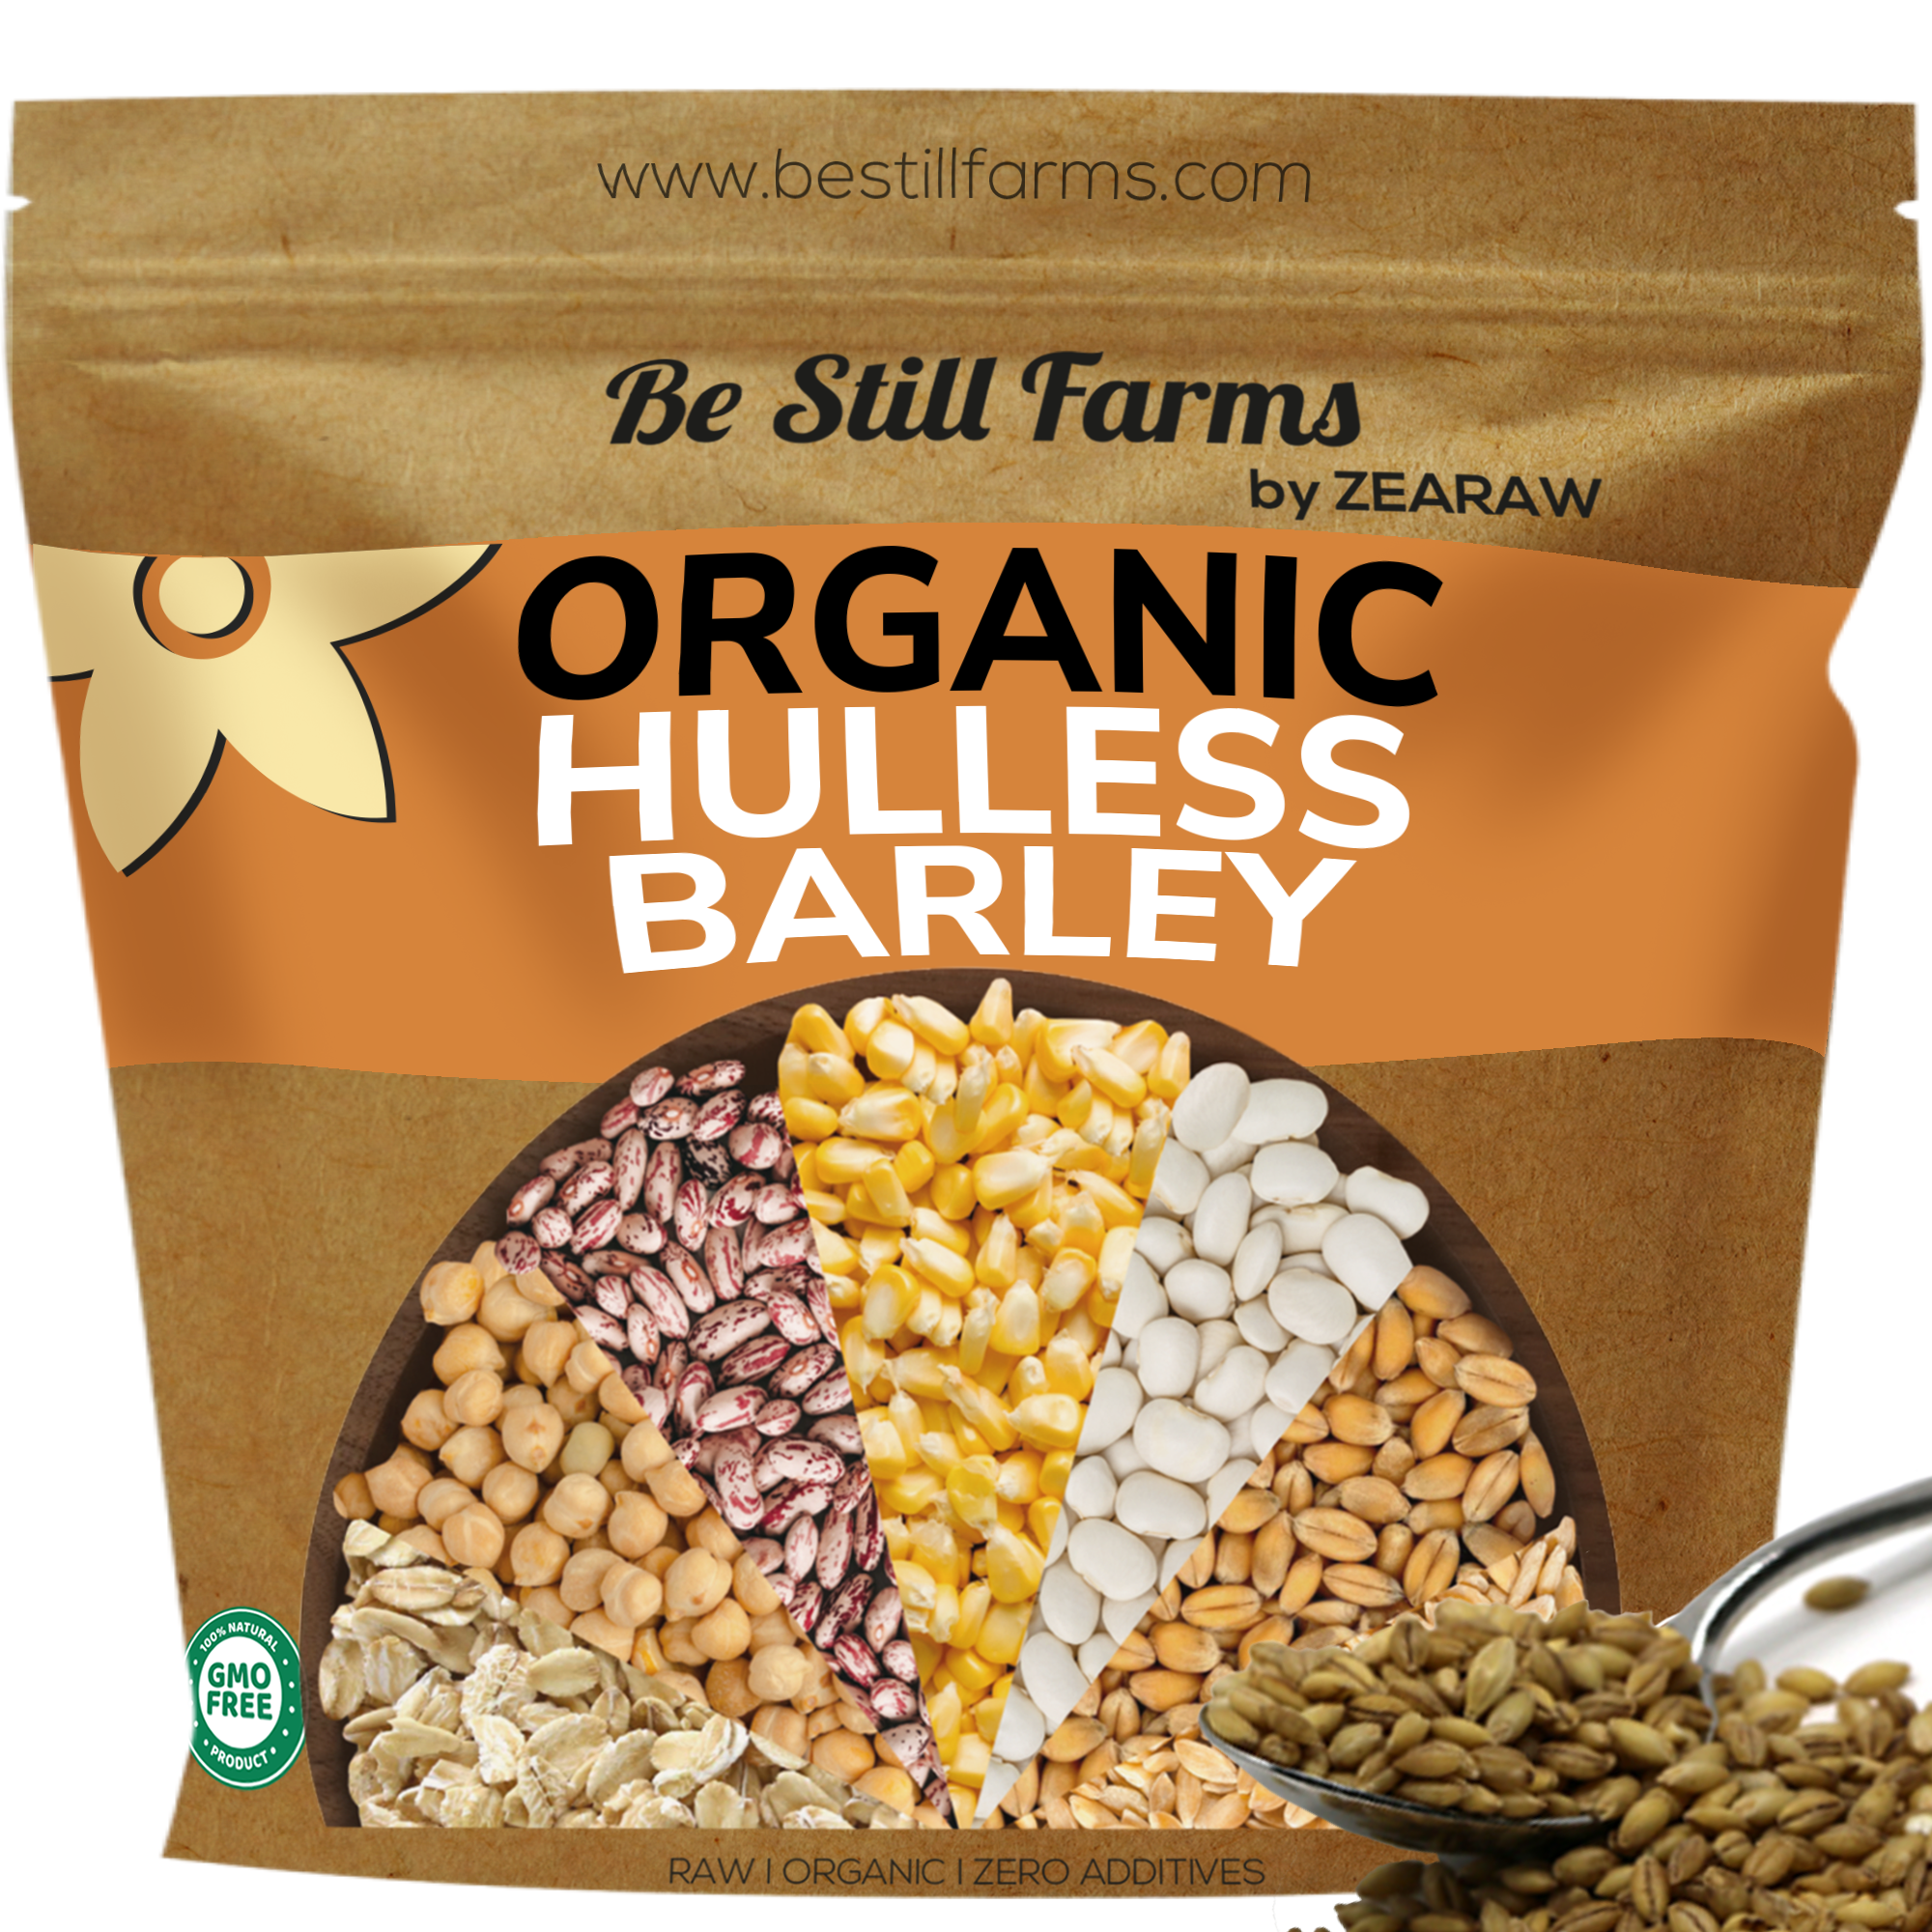 Organic Hulless Barley - Be Still Farms